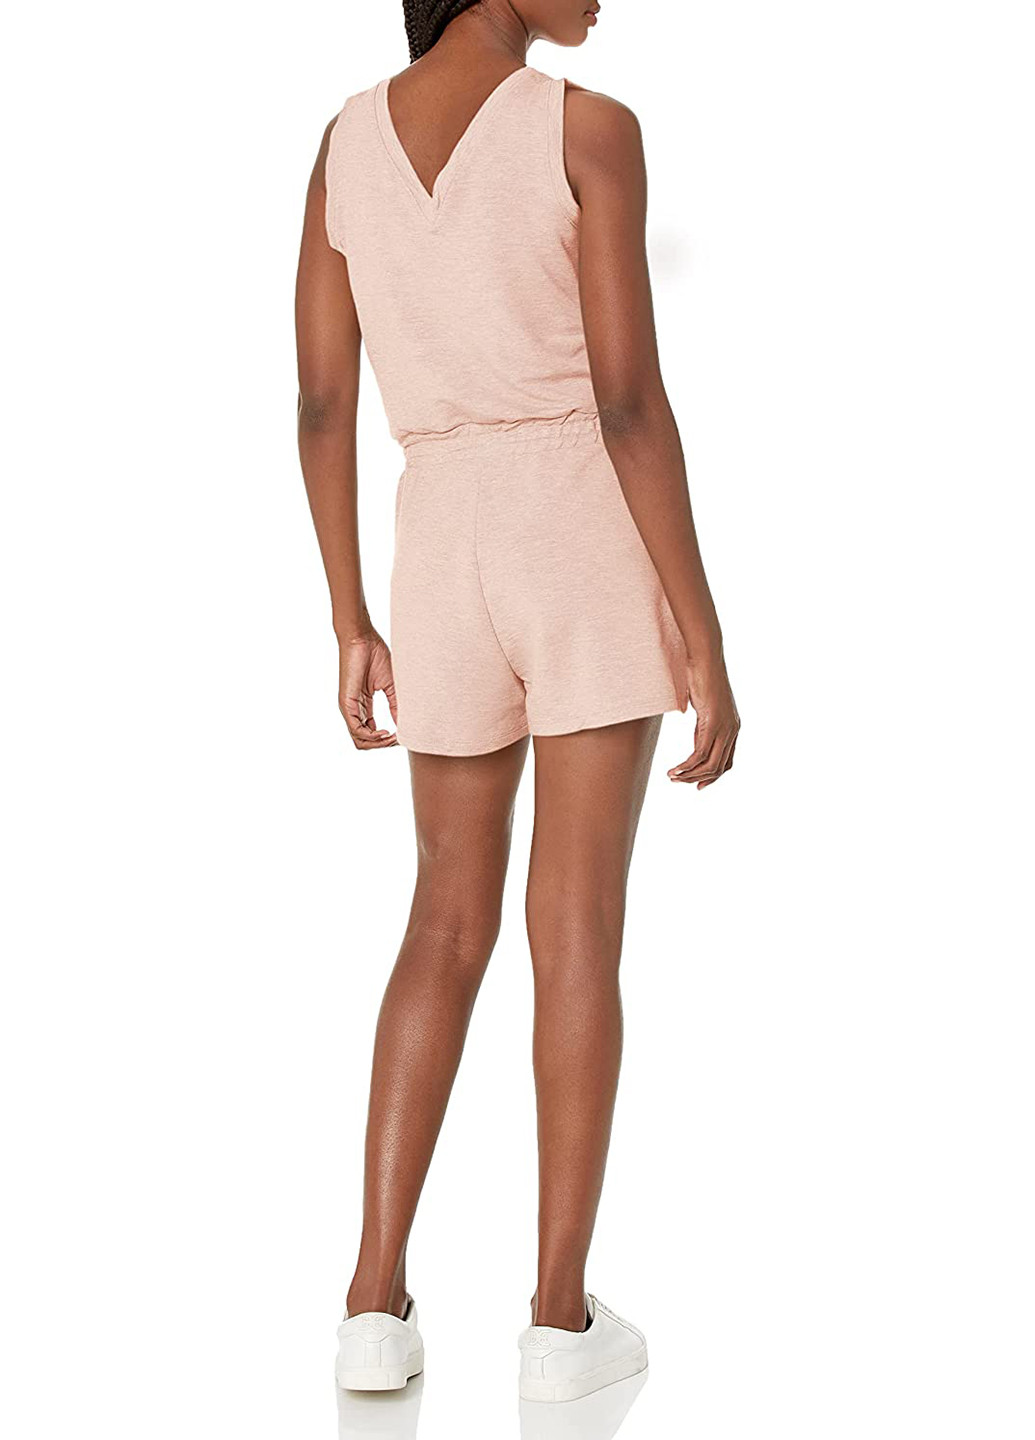 Комбінезон Calvin Klein комбінезон-шорти меланж світло-рожевий кежуал район